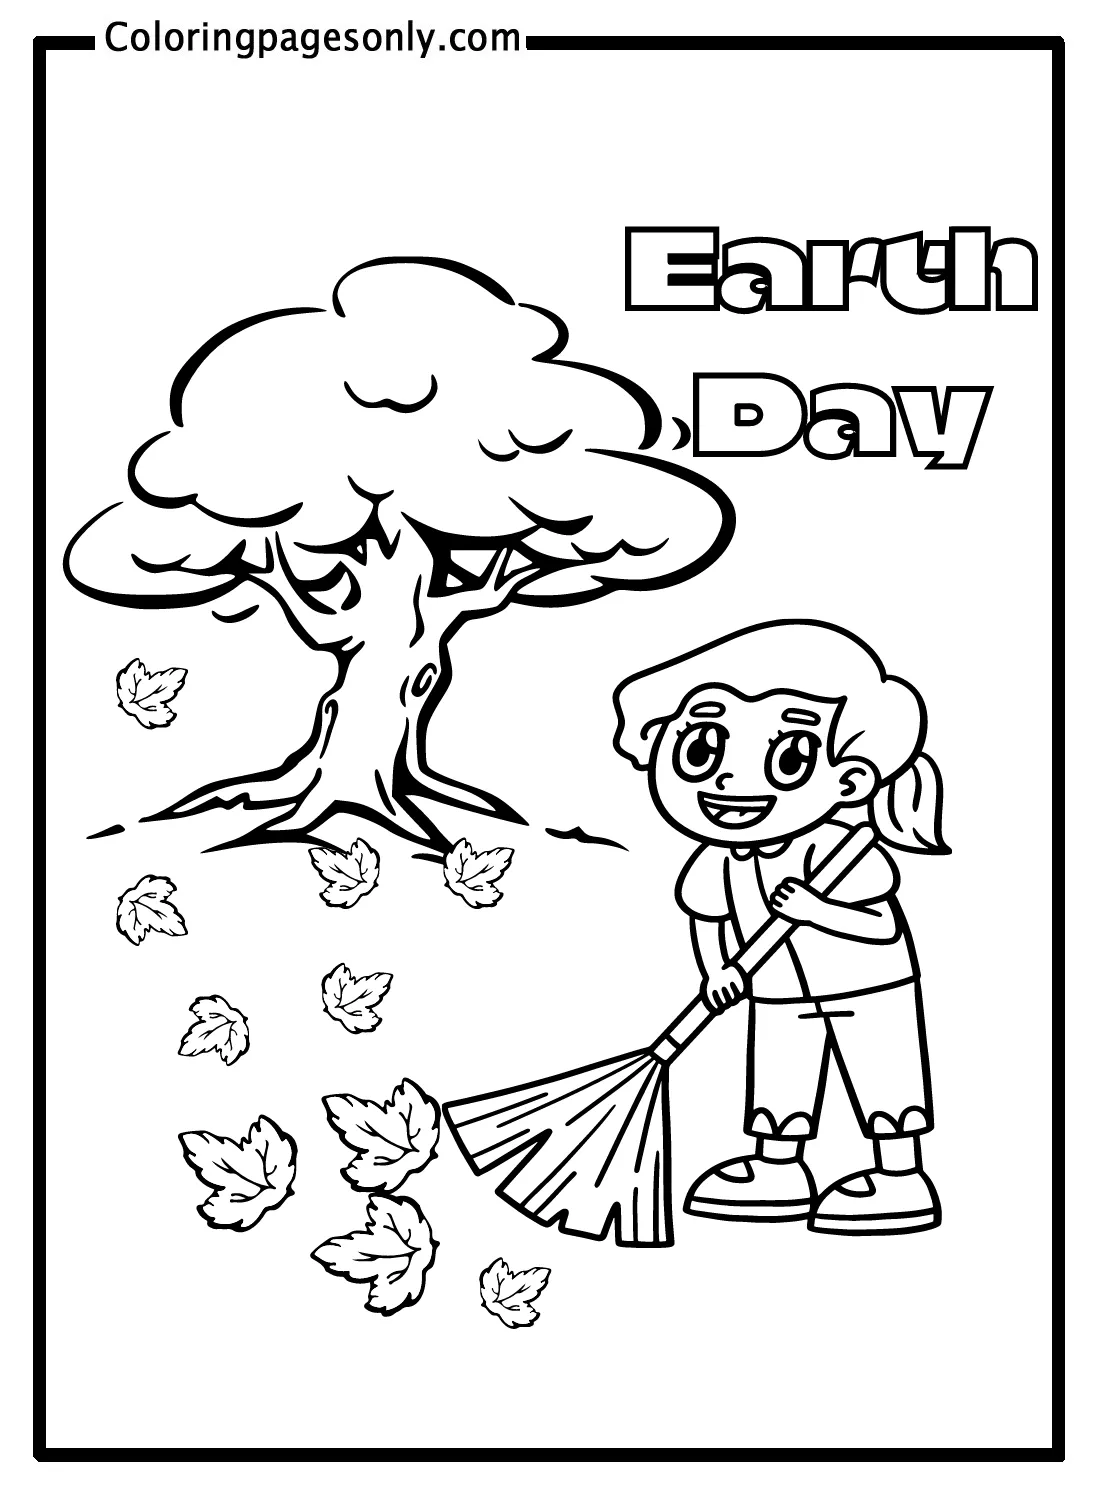 Páginas para colorear del Día de la Tierra - Páginas para colorear del Día  de la Tierra - Páginas para colorear para niños y adultos